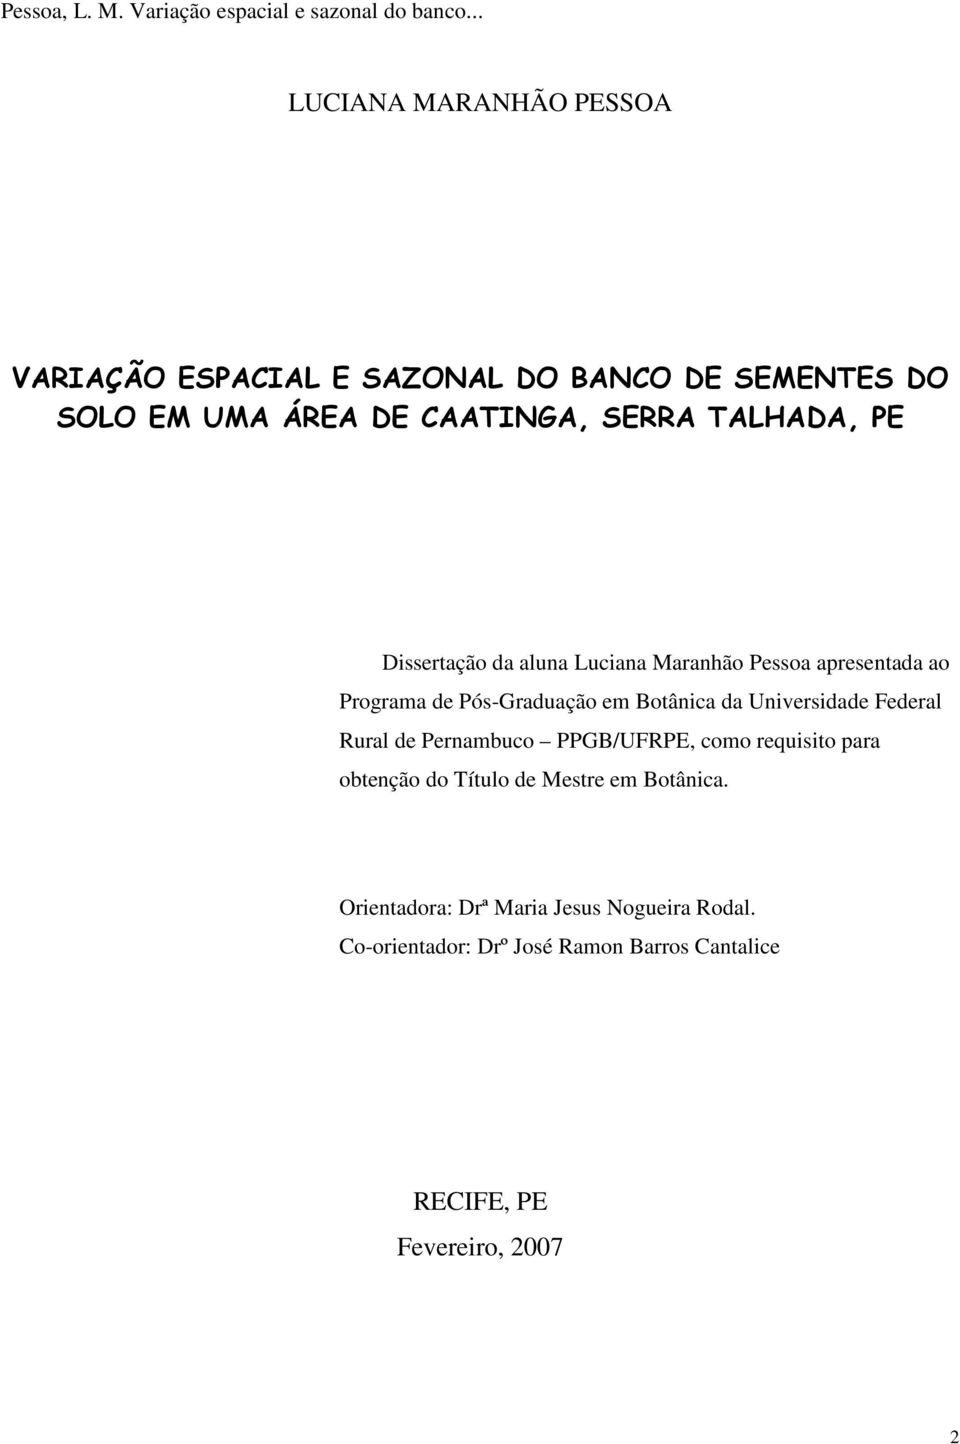 Universidade Federal Rural de Pernambuco PPGB/UFRPE, como requisito para obtenção do Título de Mestre em Botânica.